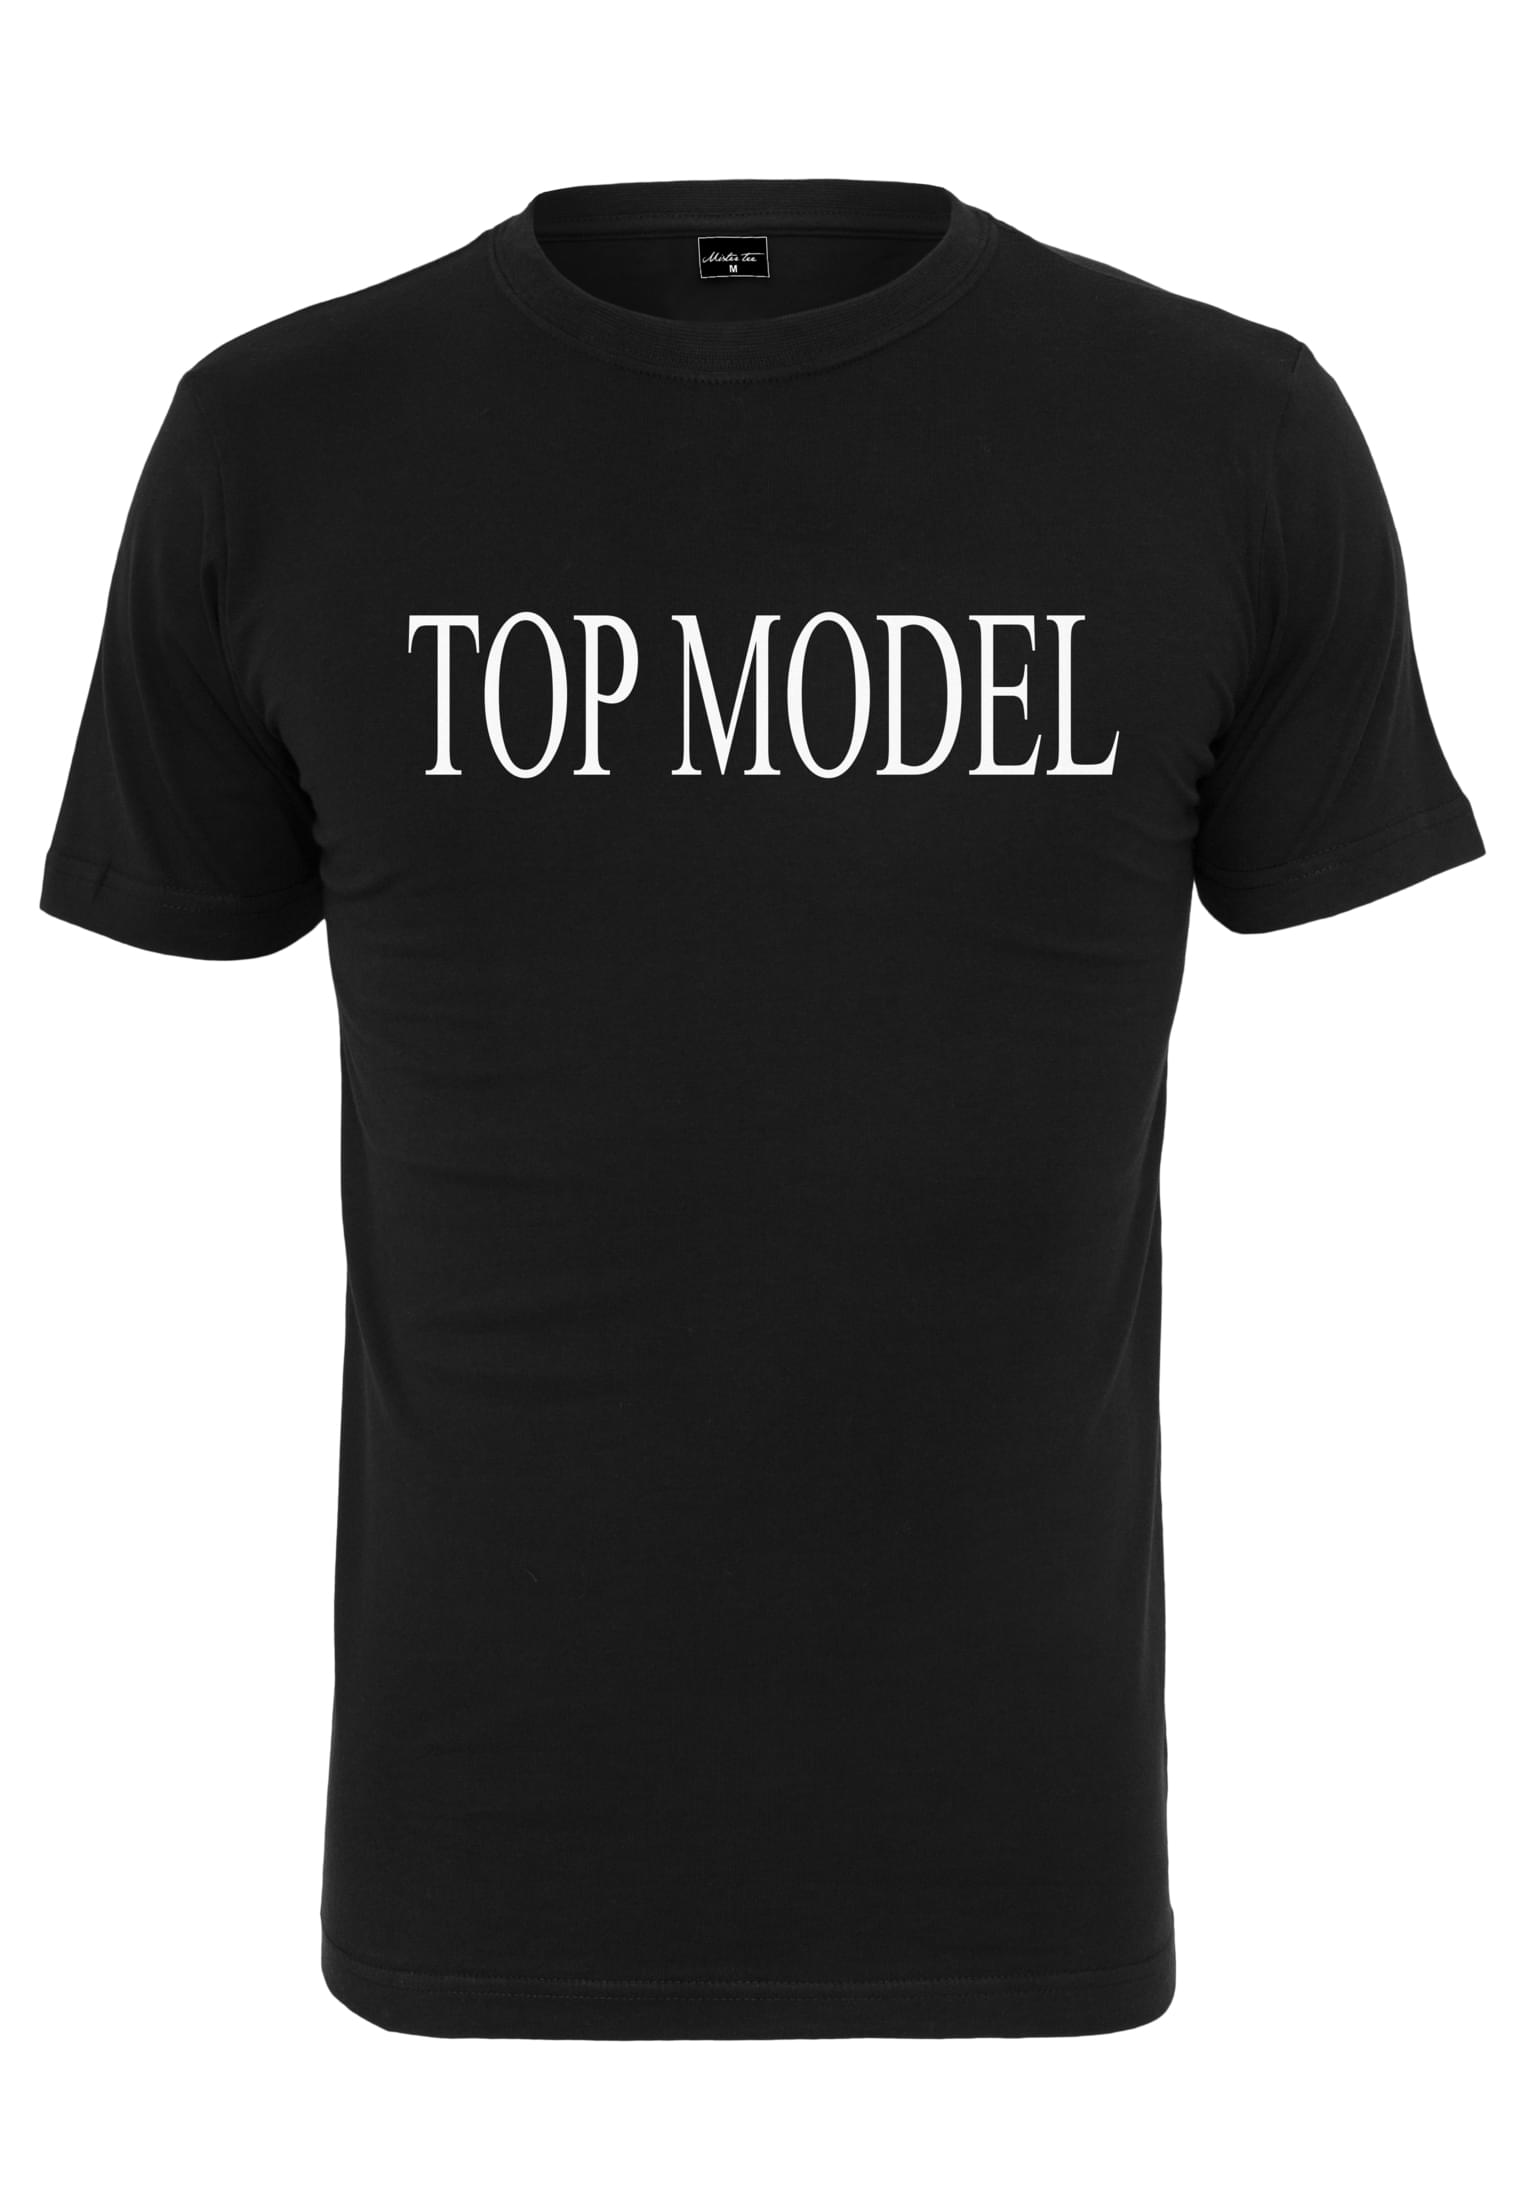 Top model T-shirt black color